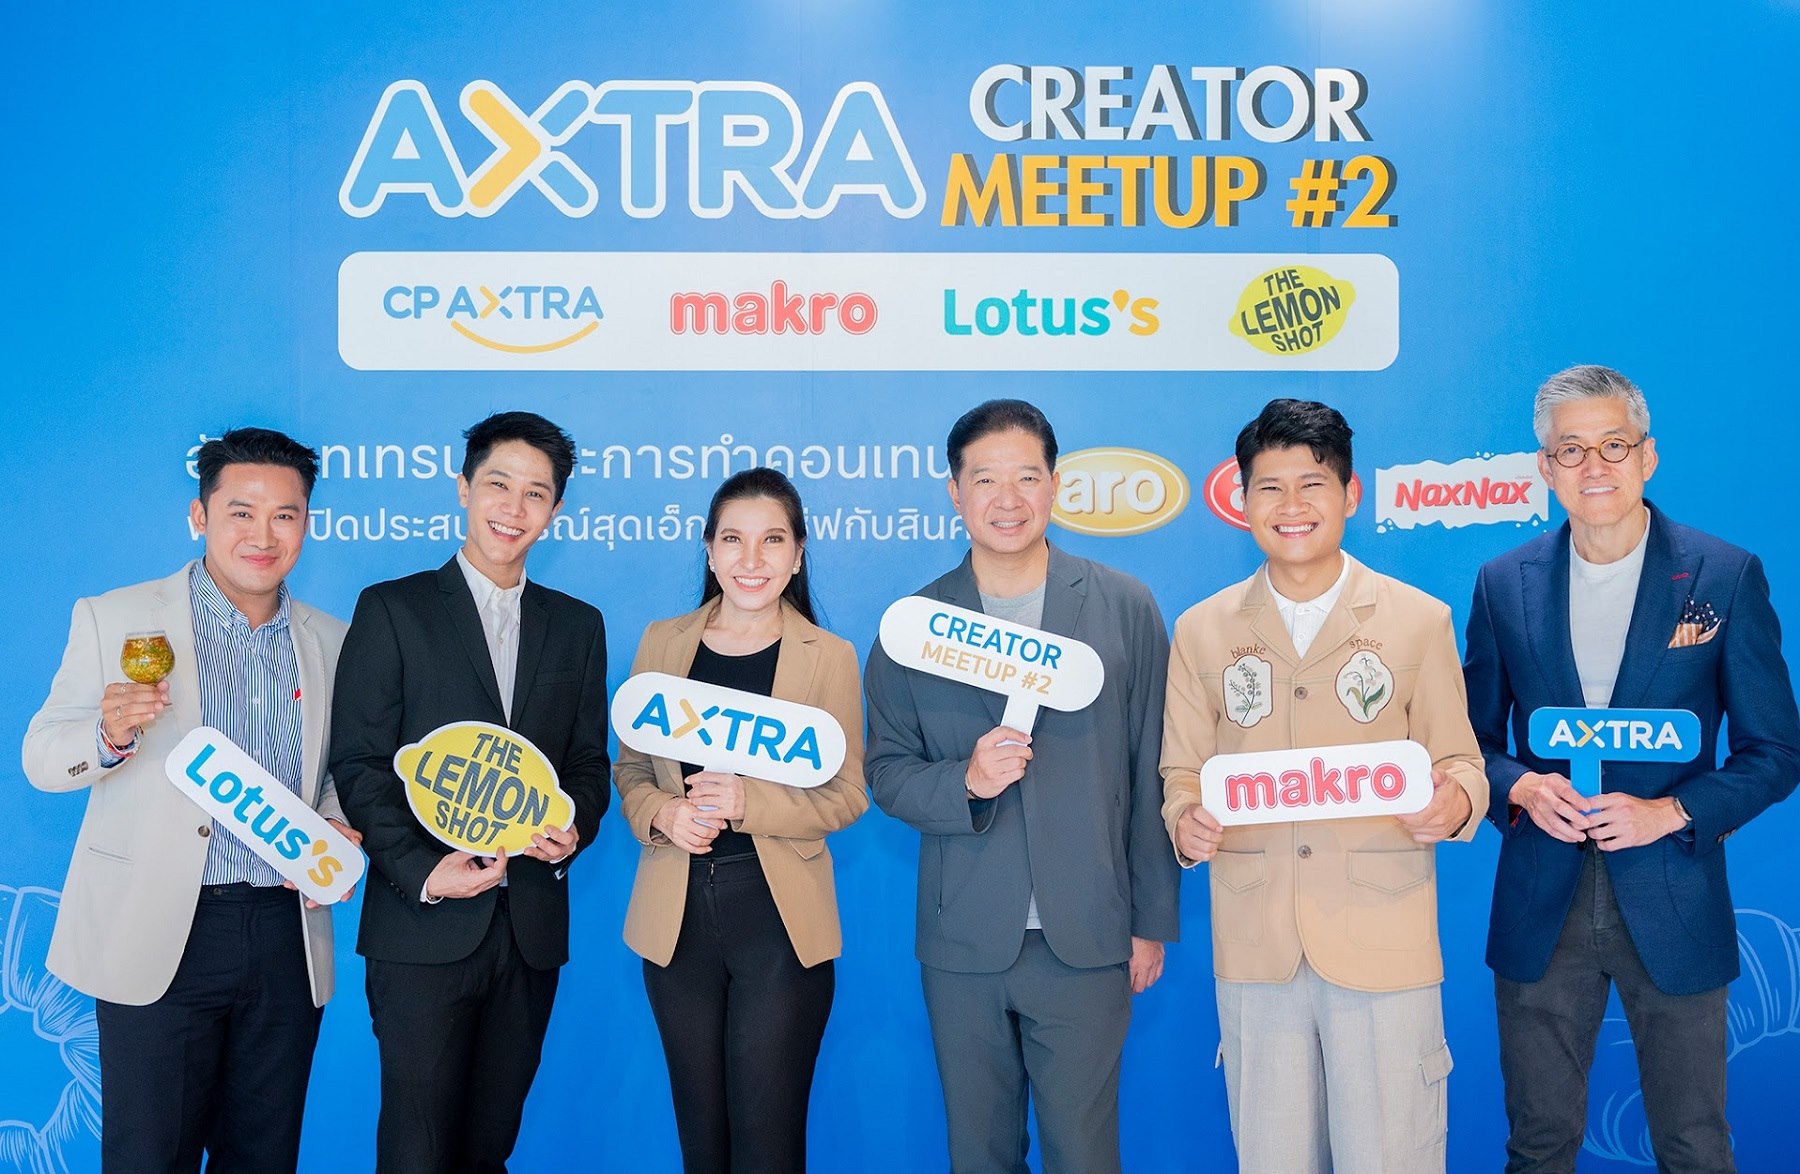 “ซีพี แอ็กซ์ตร้า” จัดงาน “AXTRA Creator Meetup ครั้งที่ 2” รวมพลชาวครีเอเตอร์สาย Content